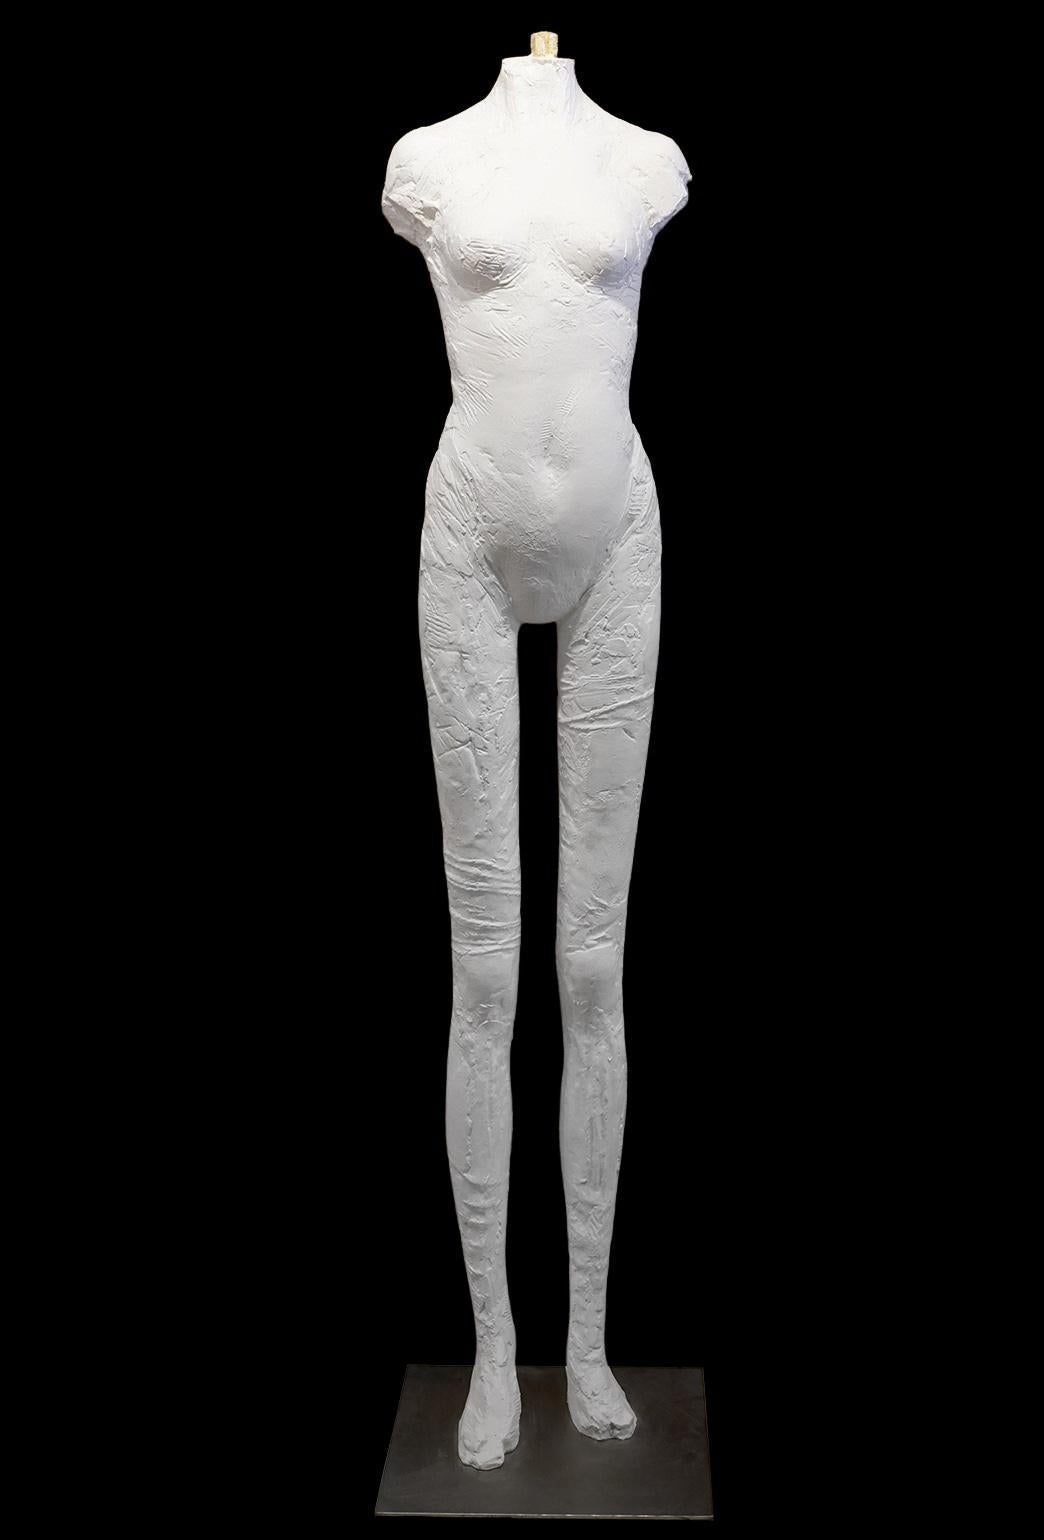 Modelée dans le style de Manuel Neri (Américain 1930-2021), cette figure aux longues jambes exagérées rappelle à certains égards les œuvres de Giacometti. D'une hauteur de 2 mètres, la sculpture ajoute une nouvelle dimension à son environnement,